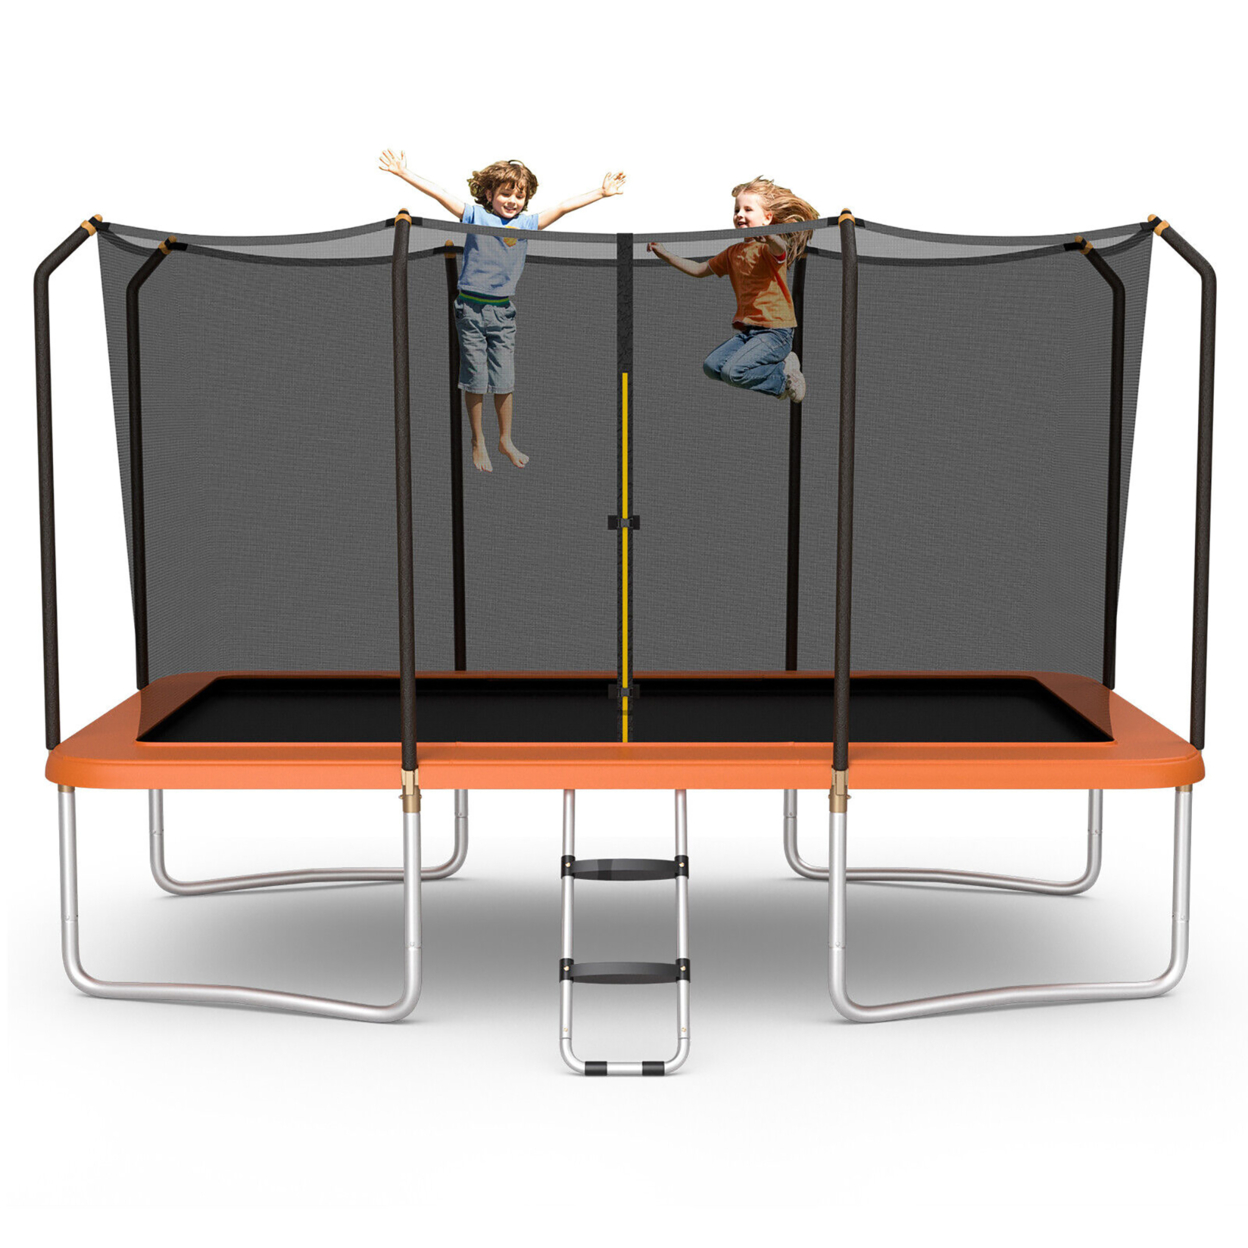 8 X 14 FT Rectangular Recreational Trampoline W/ Safety Enclosure Net Ladder Outdoor - Orange